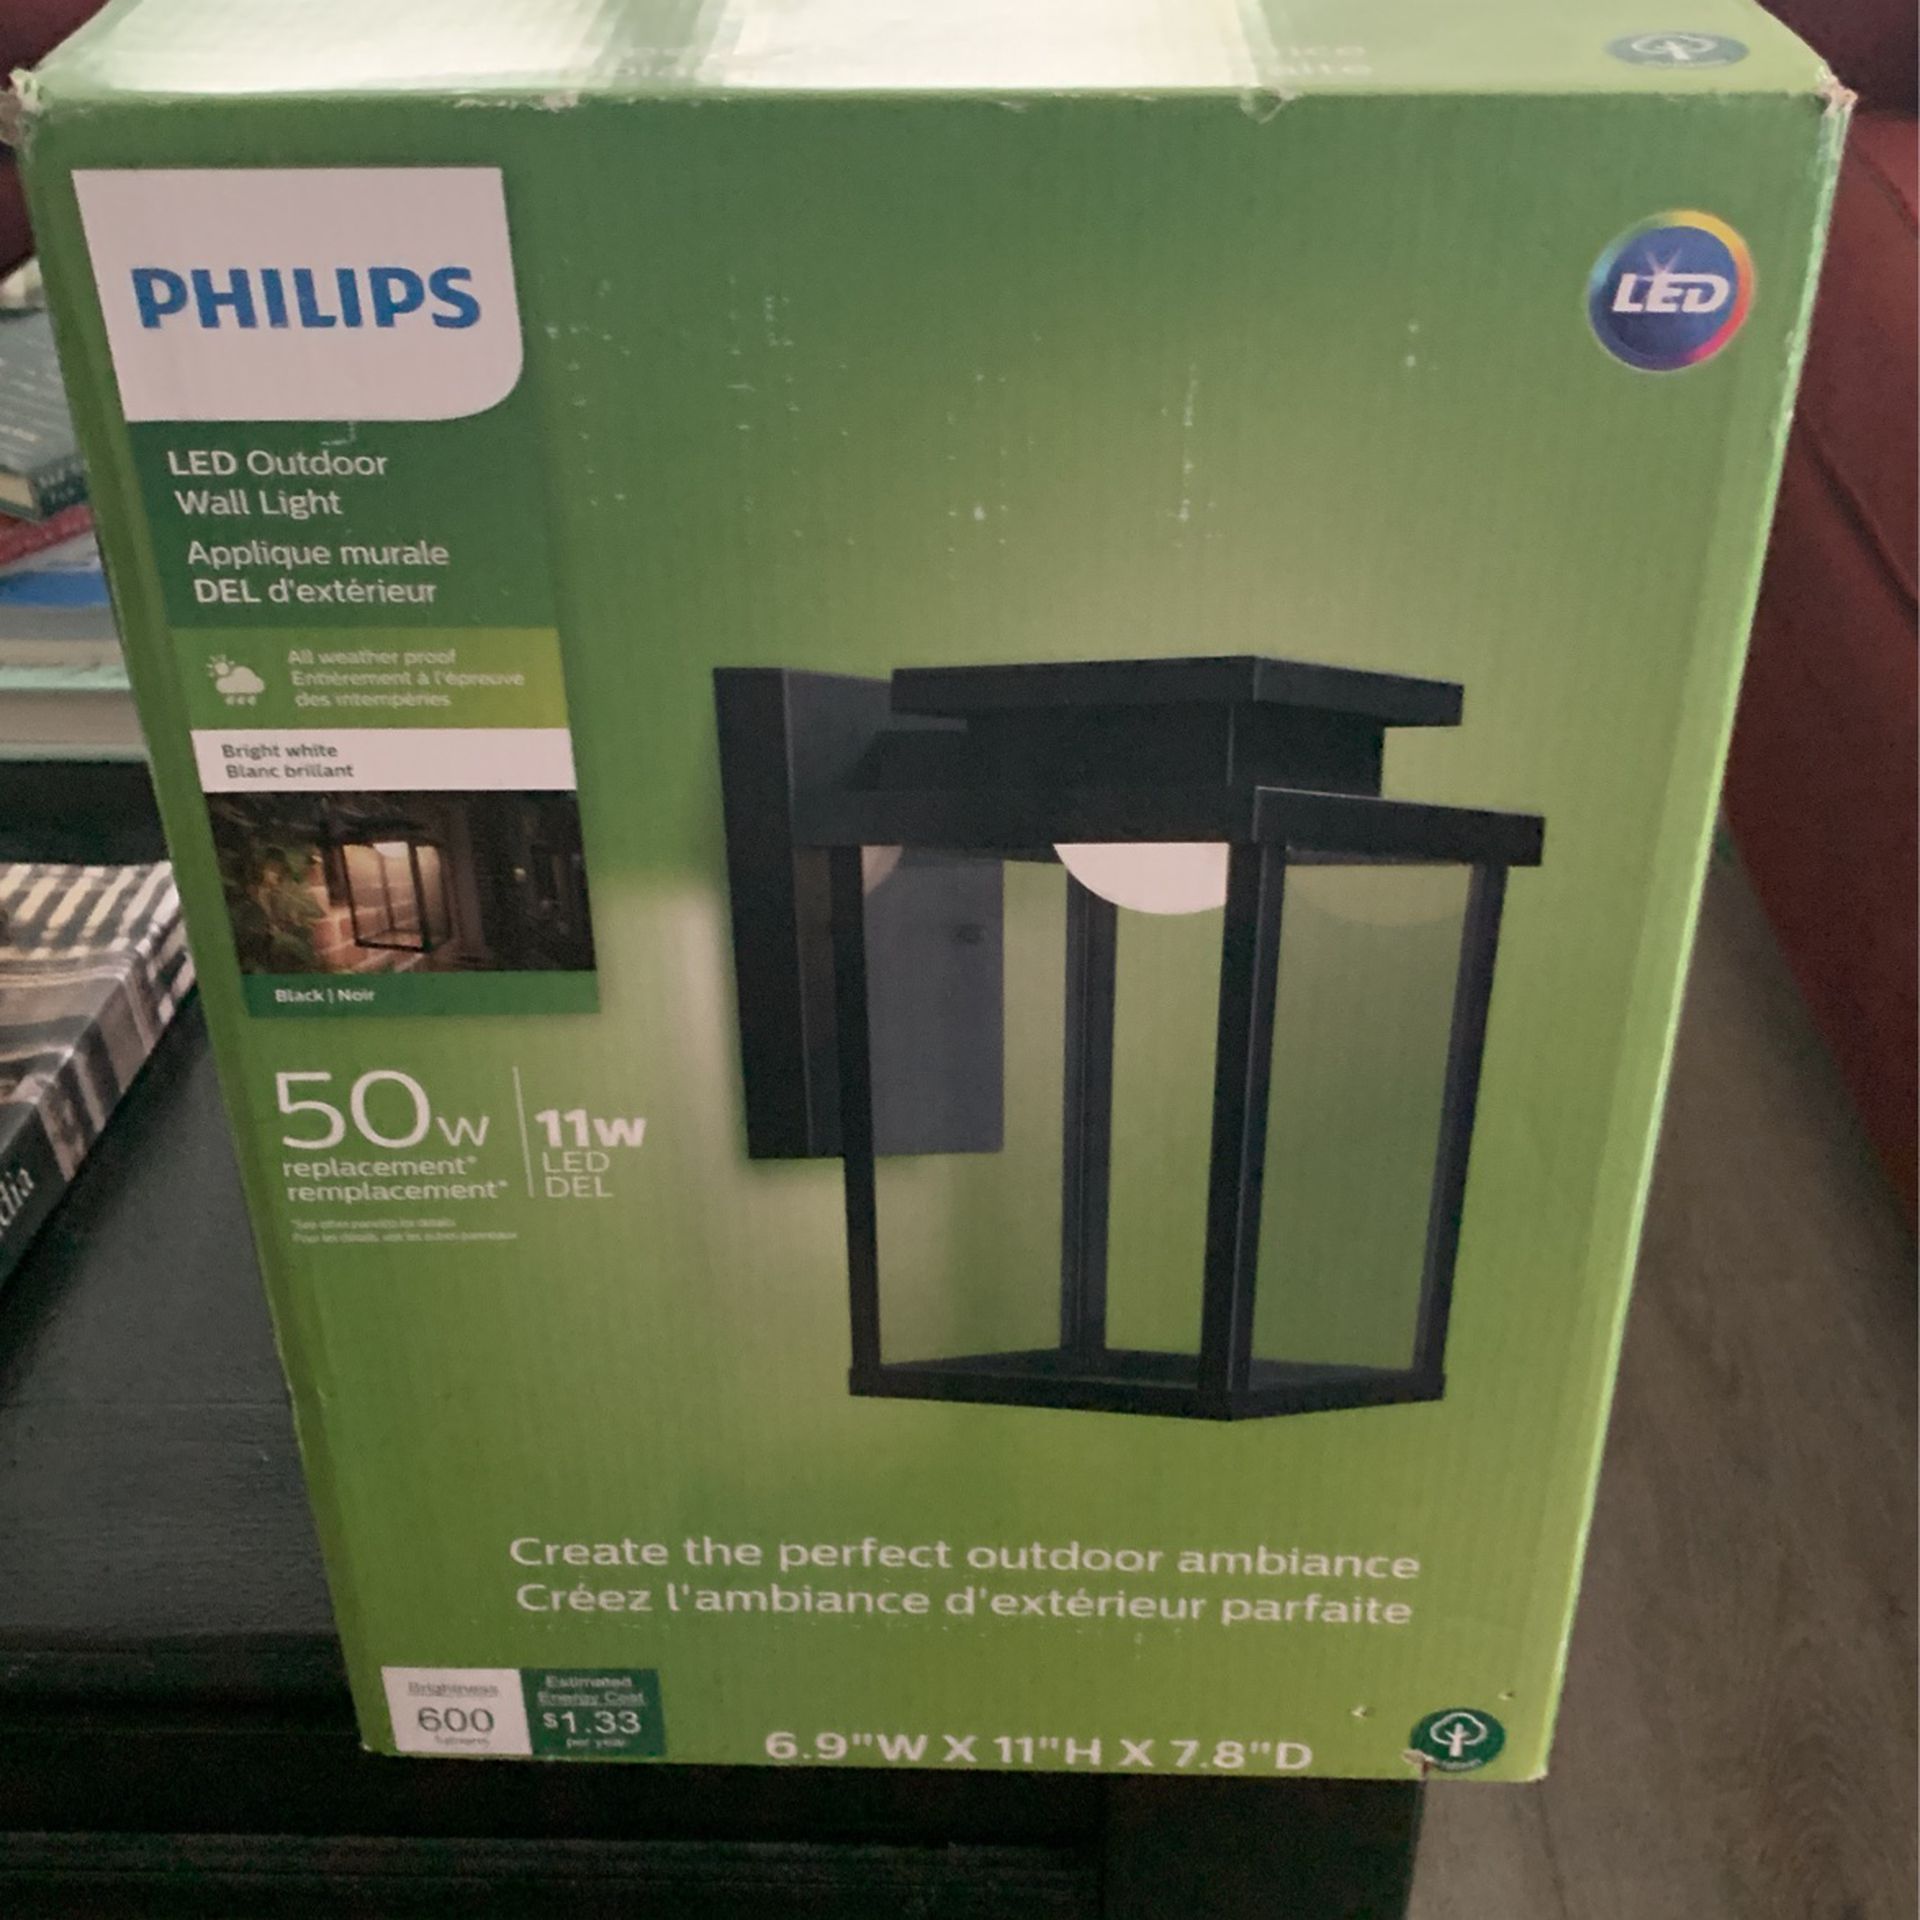 Phillips 50 Watt LED Outdoor Wall light